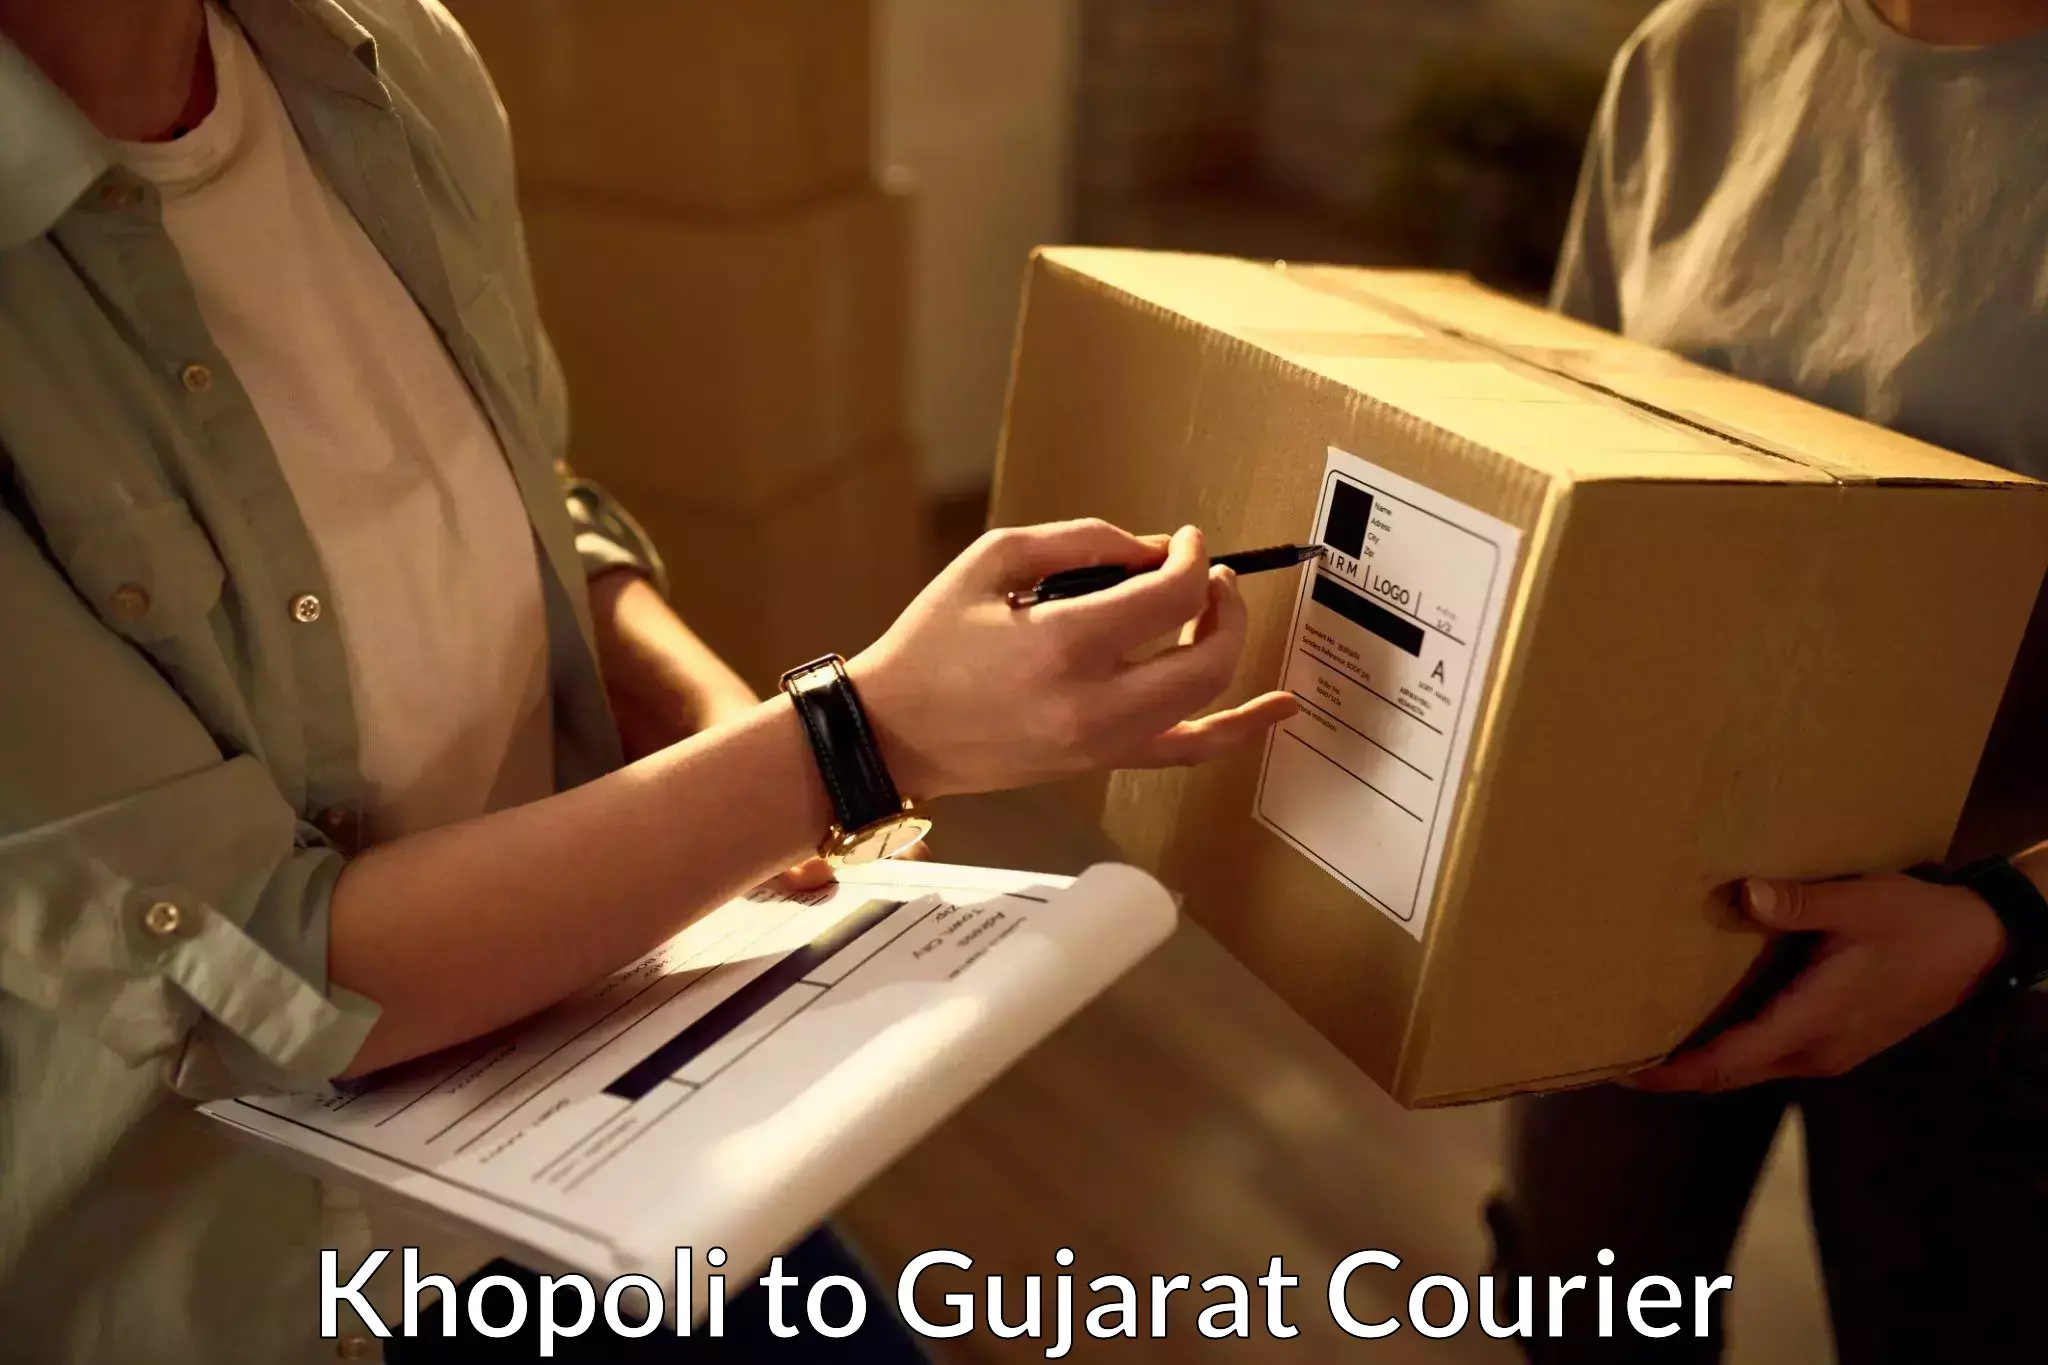 Affordable parcel service Khopoli to Sami